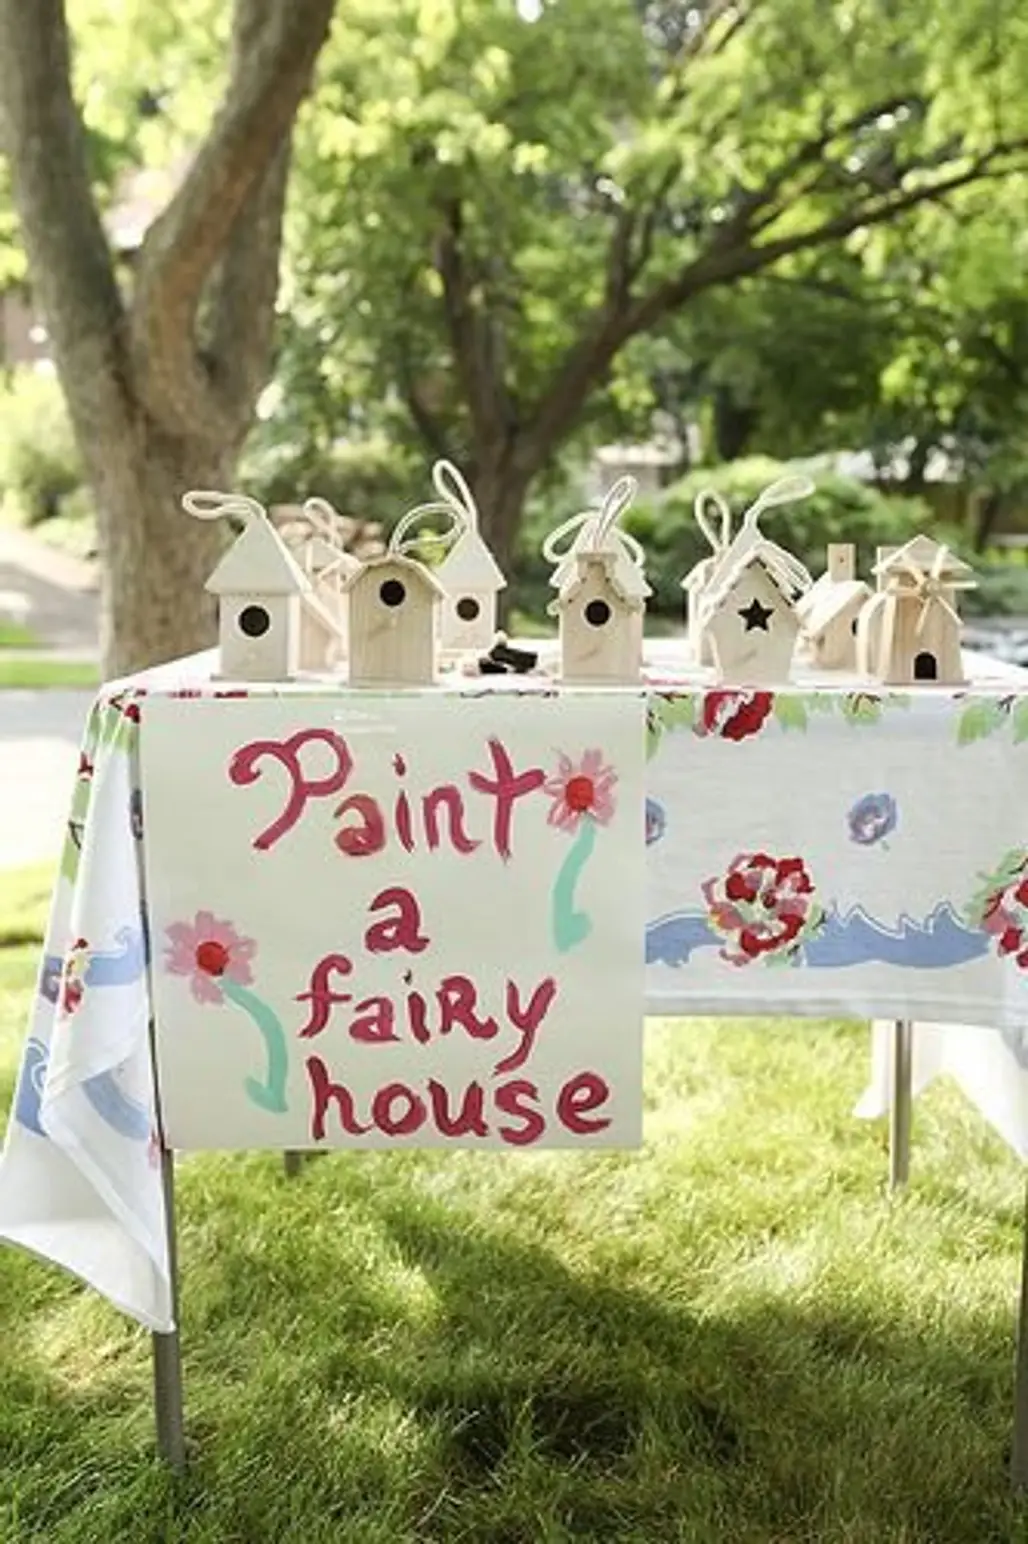 Paint a Fairy House